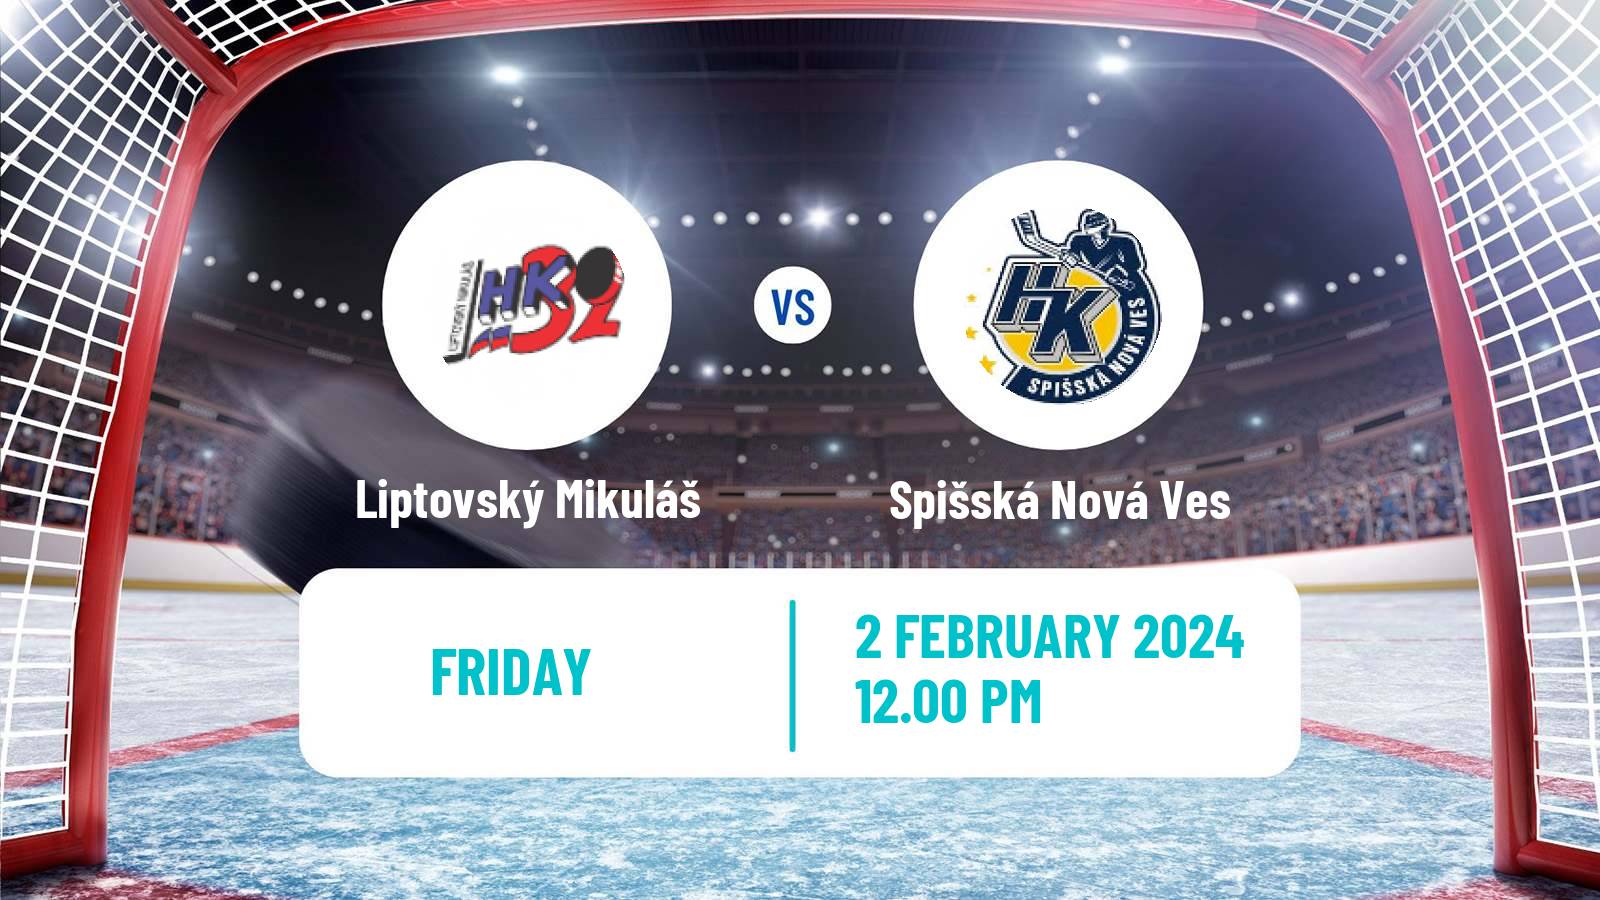 Hockey Slovak Extraliga Liptovský Mikuláš - Spišská Nová Ves